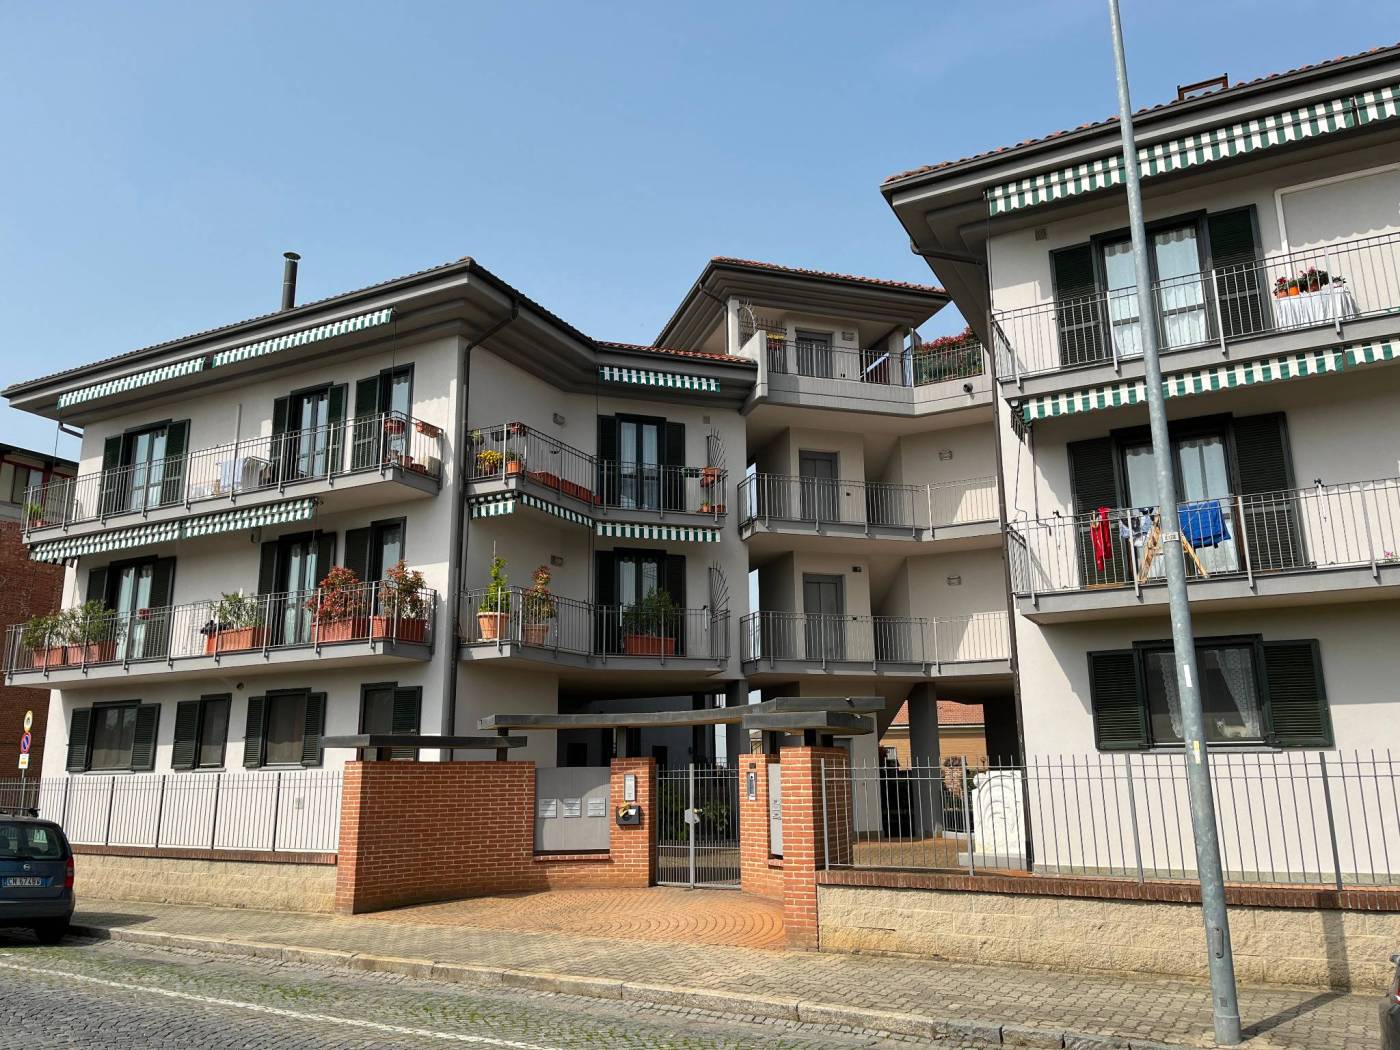 In Riva presso Chieri, in centro paese, proponiamo in vendita un quadrilocale in una piccola palazzina costruita fine anni 90. L'immobile, 